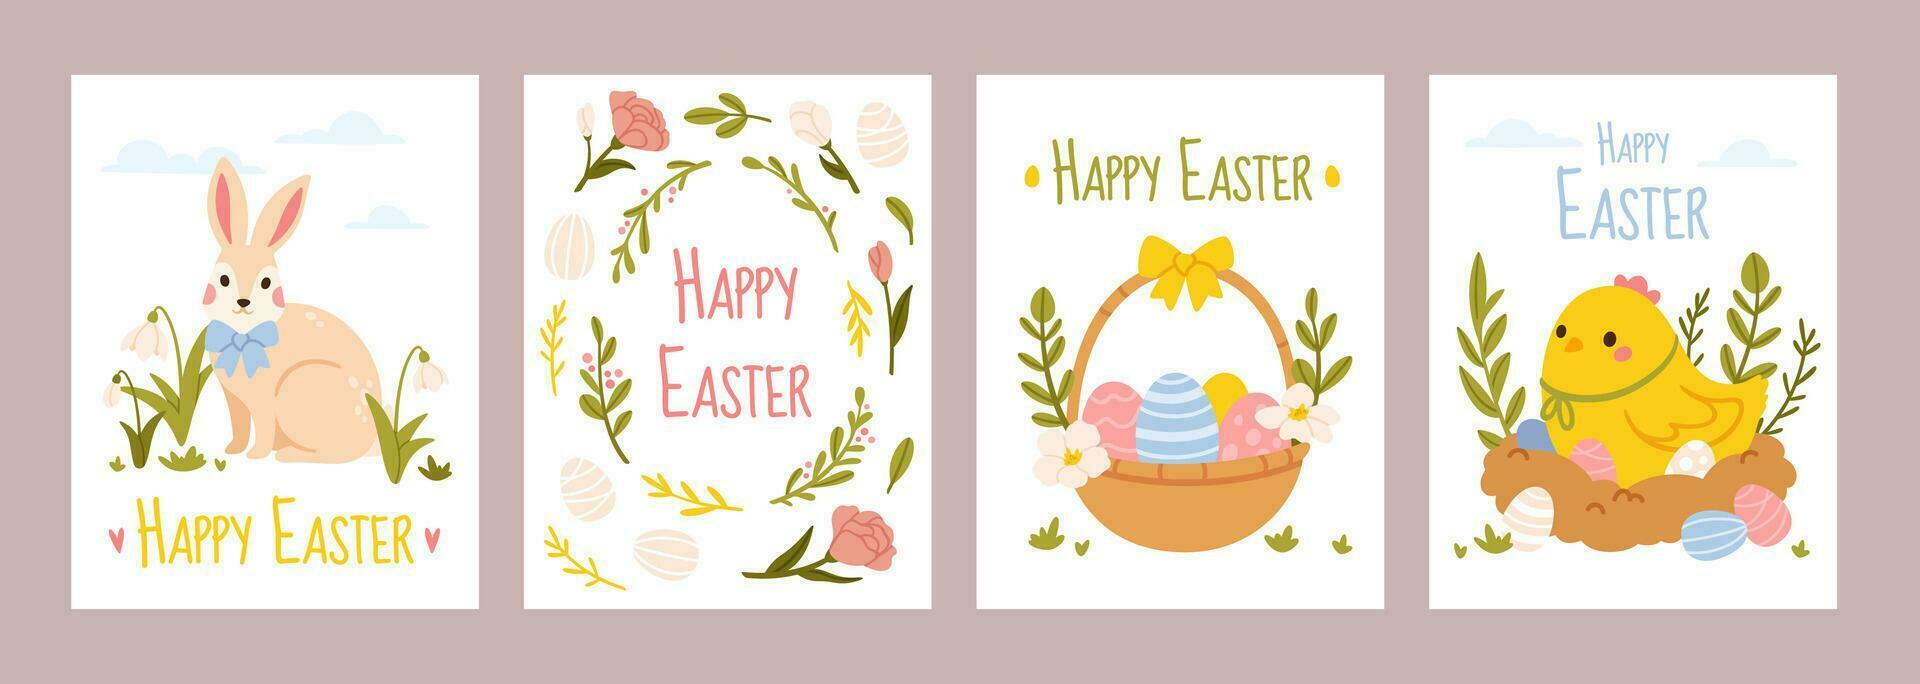 contento Pascua de Resurrección carteles fiesta saludo tarjetas con conejito, primavera campanilla de febrero flores, cesta con Pascua de Resurrección huevos y linda amarillo polluelo. vector bandera conjunto